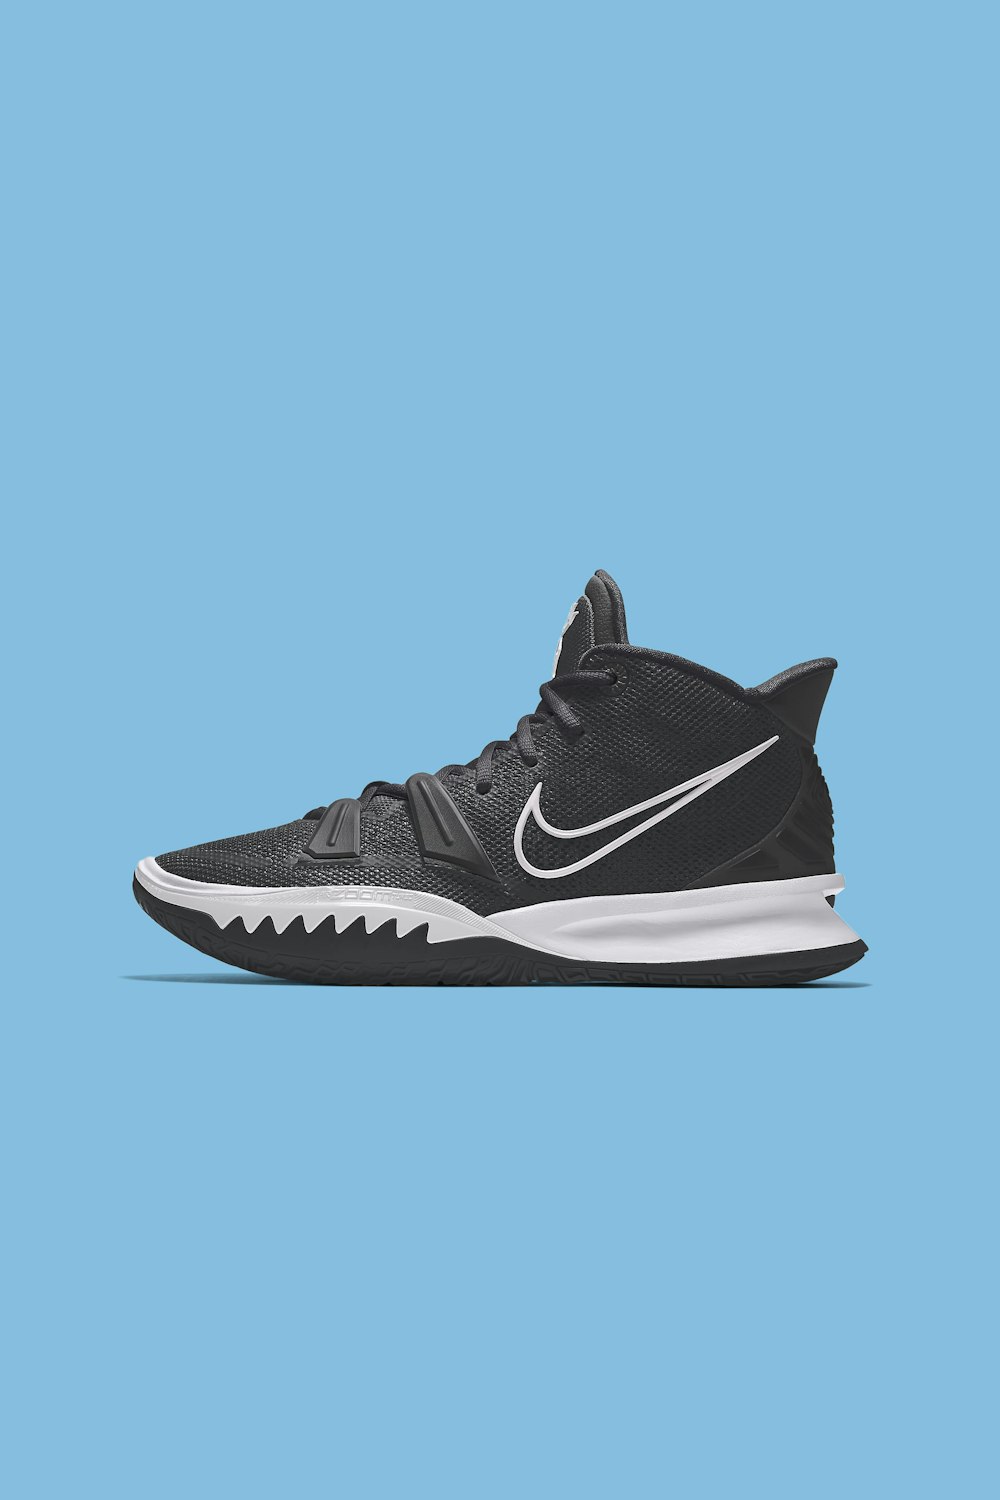 Schwarz-weiße Nike Sportschuhe